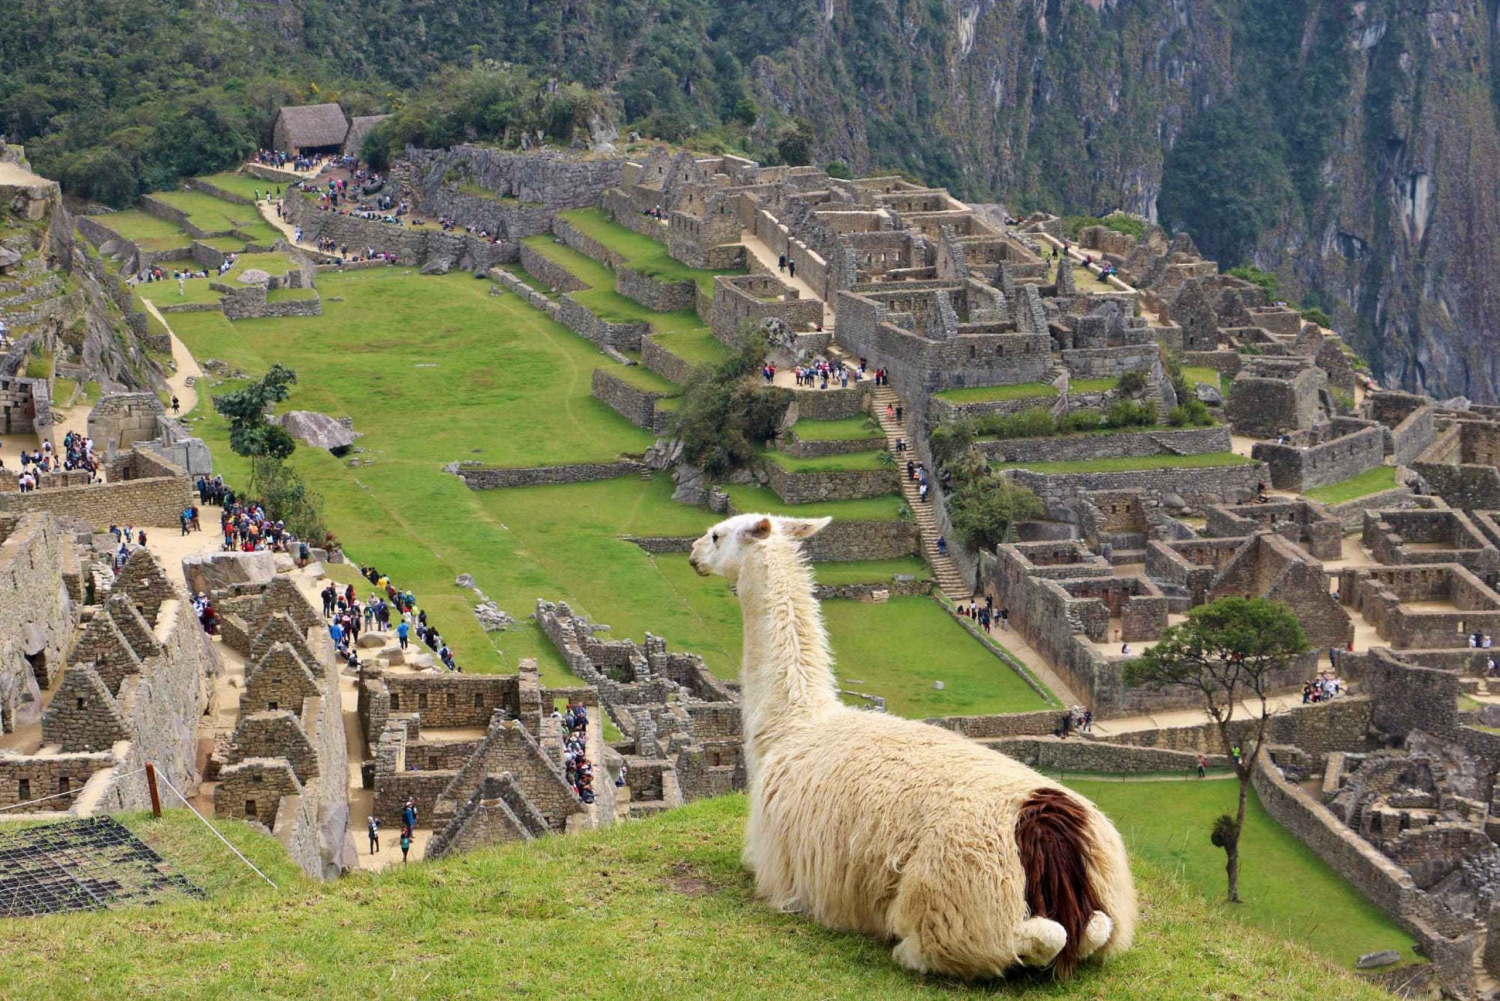 Lima: Excursão de 9 Dias pelo Peru c/ Ica, Cusco e Puno